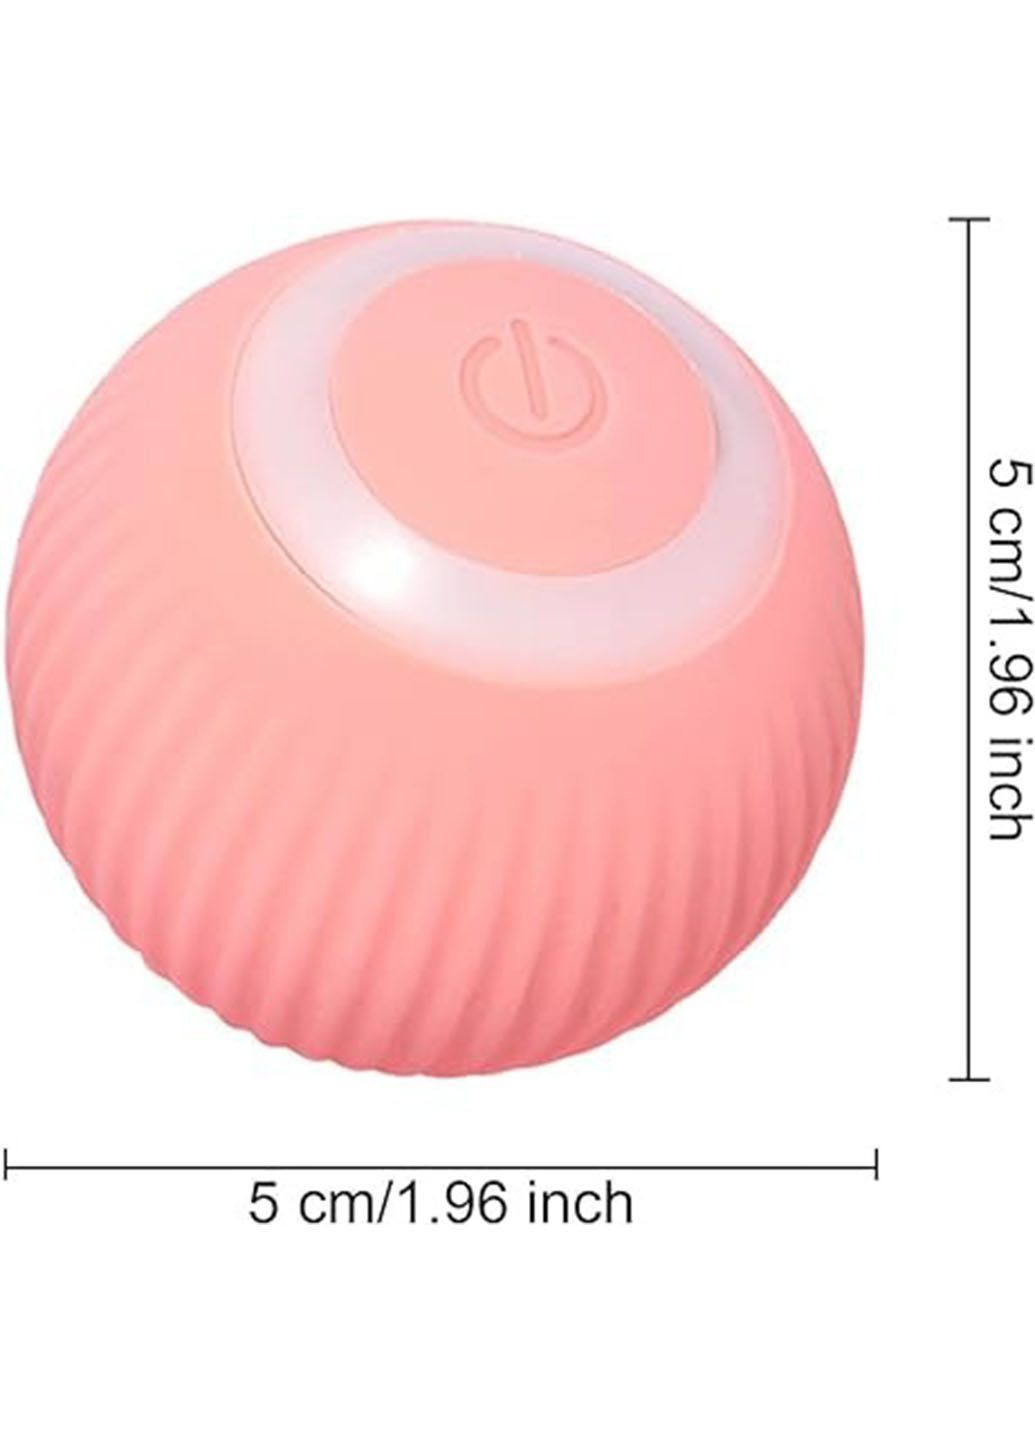 Интерактивная игрушка мячик для животных Pet Gravity с USB-зарядкой и подсветкой Good Idea rd-23 (290416618)